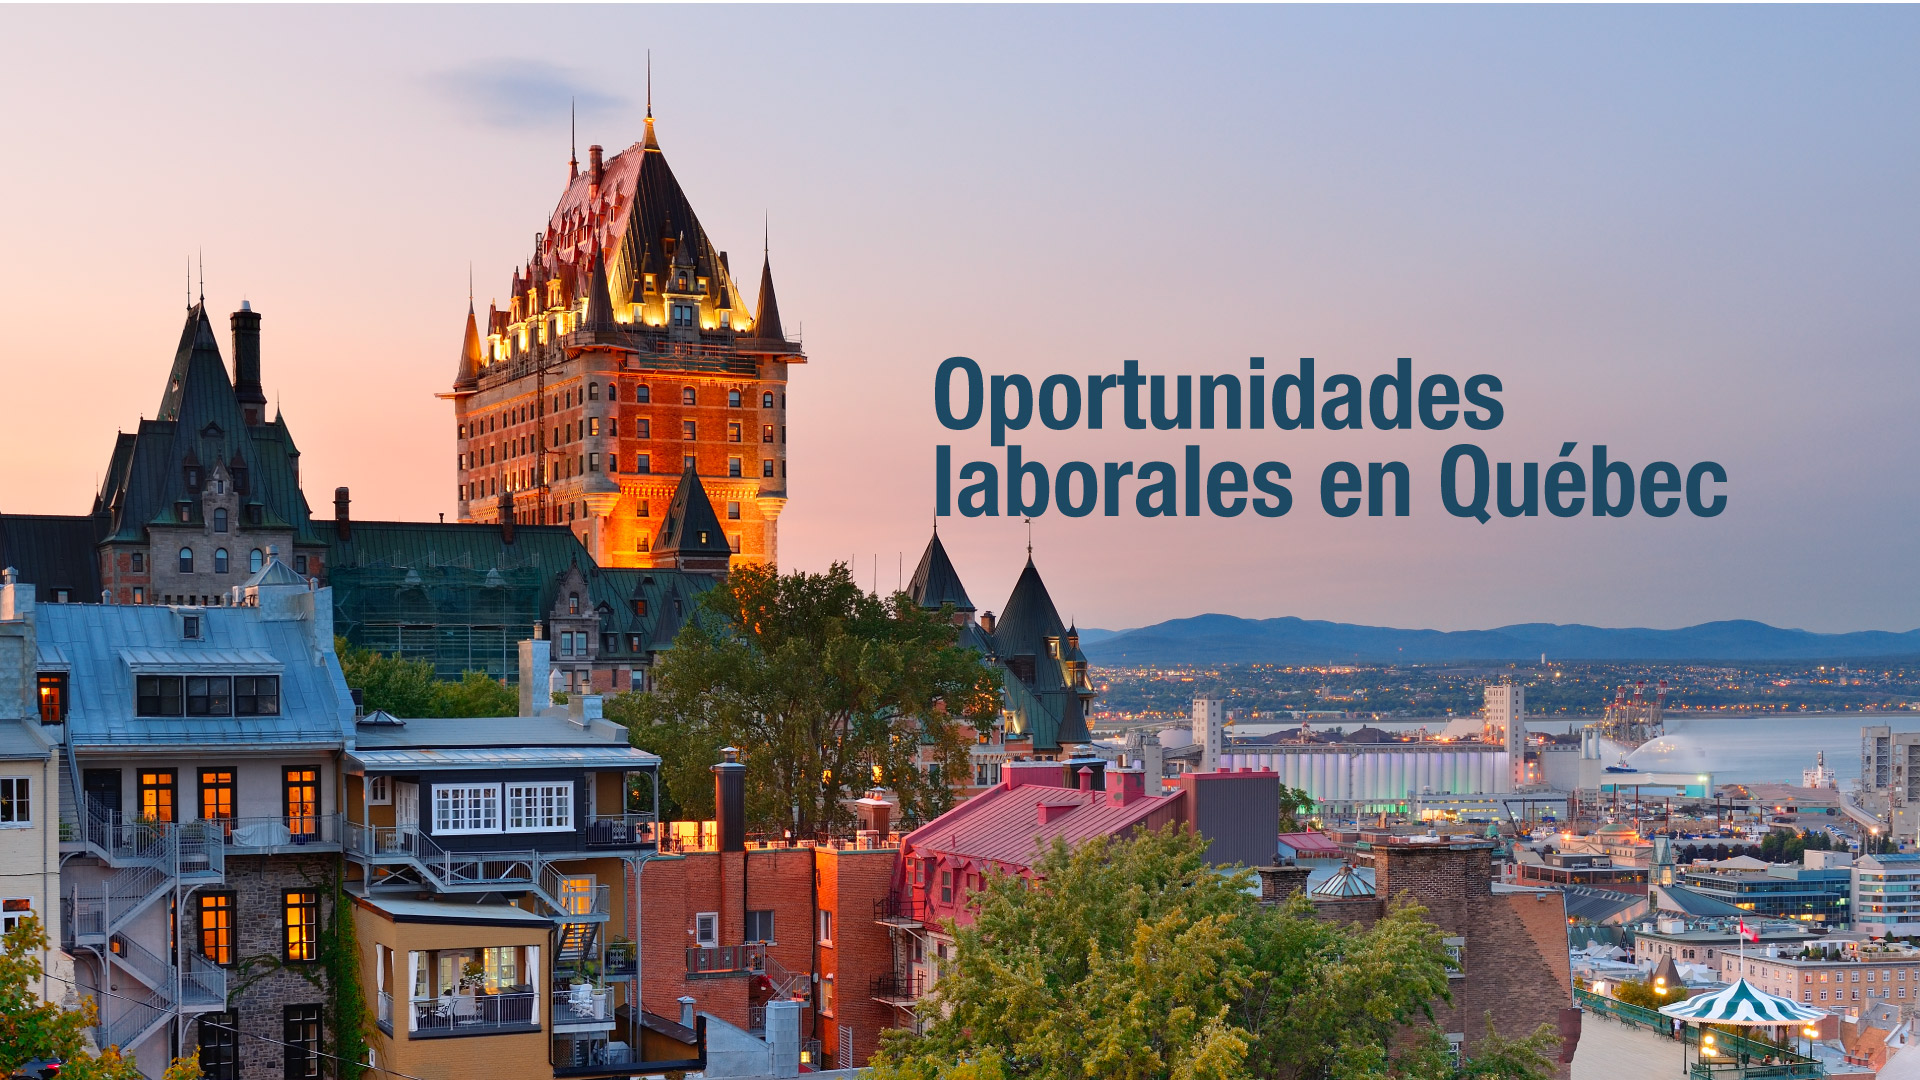 Graduado y estudiante uniquindiano, ¿te gustaría trabajar en Québec?